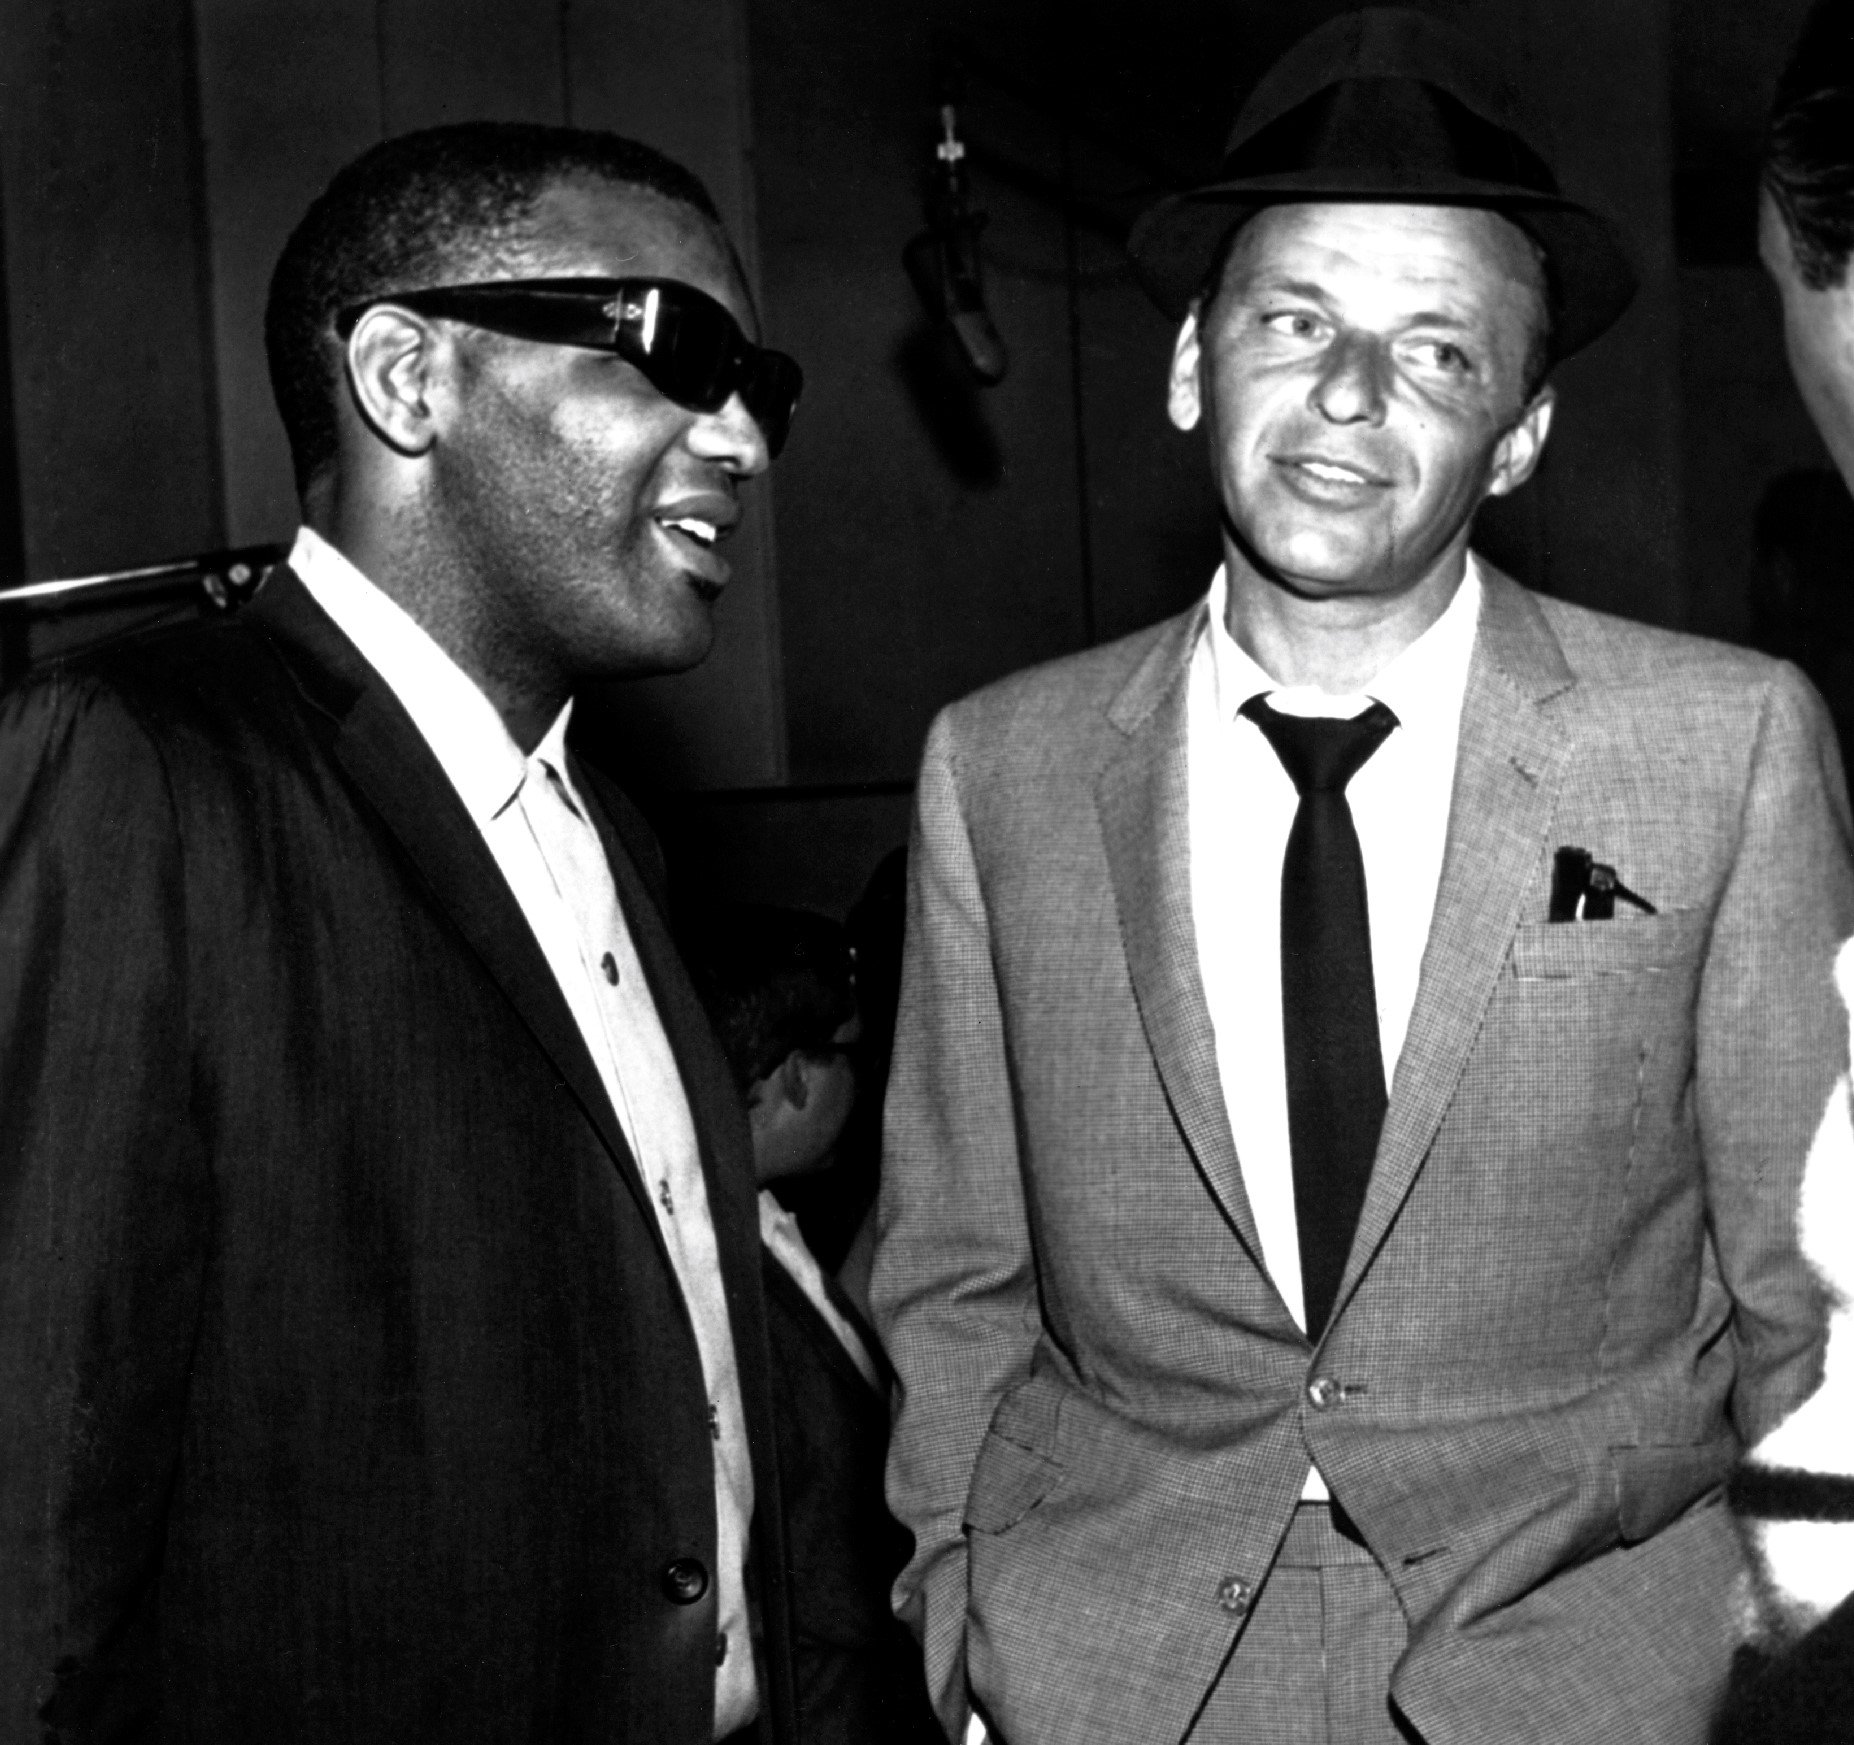 Frank Sinatra ha impedito a Ray Charles di cantare "That's Life" per la prima volta